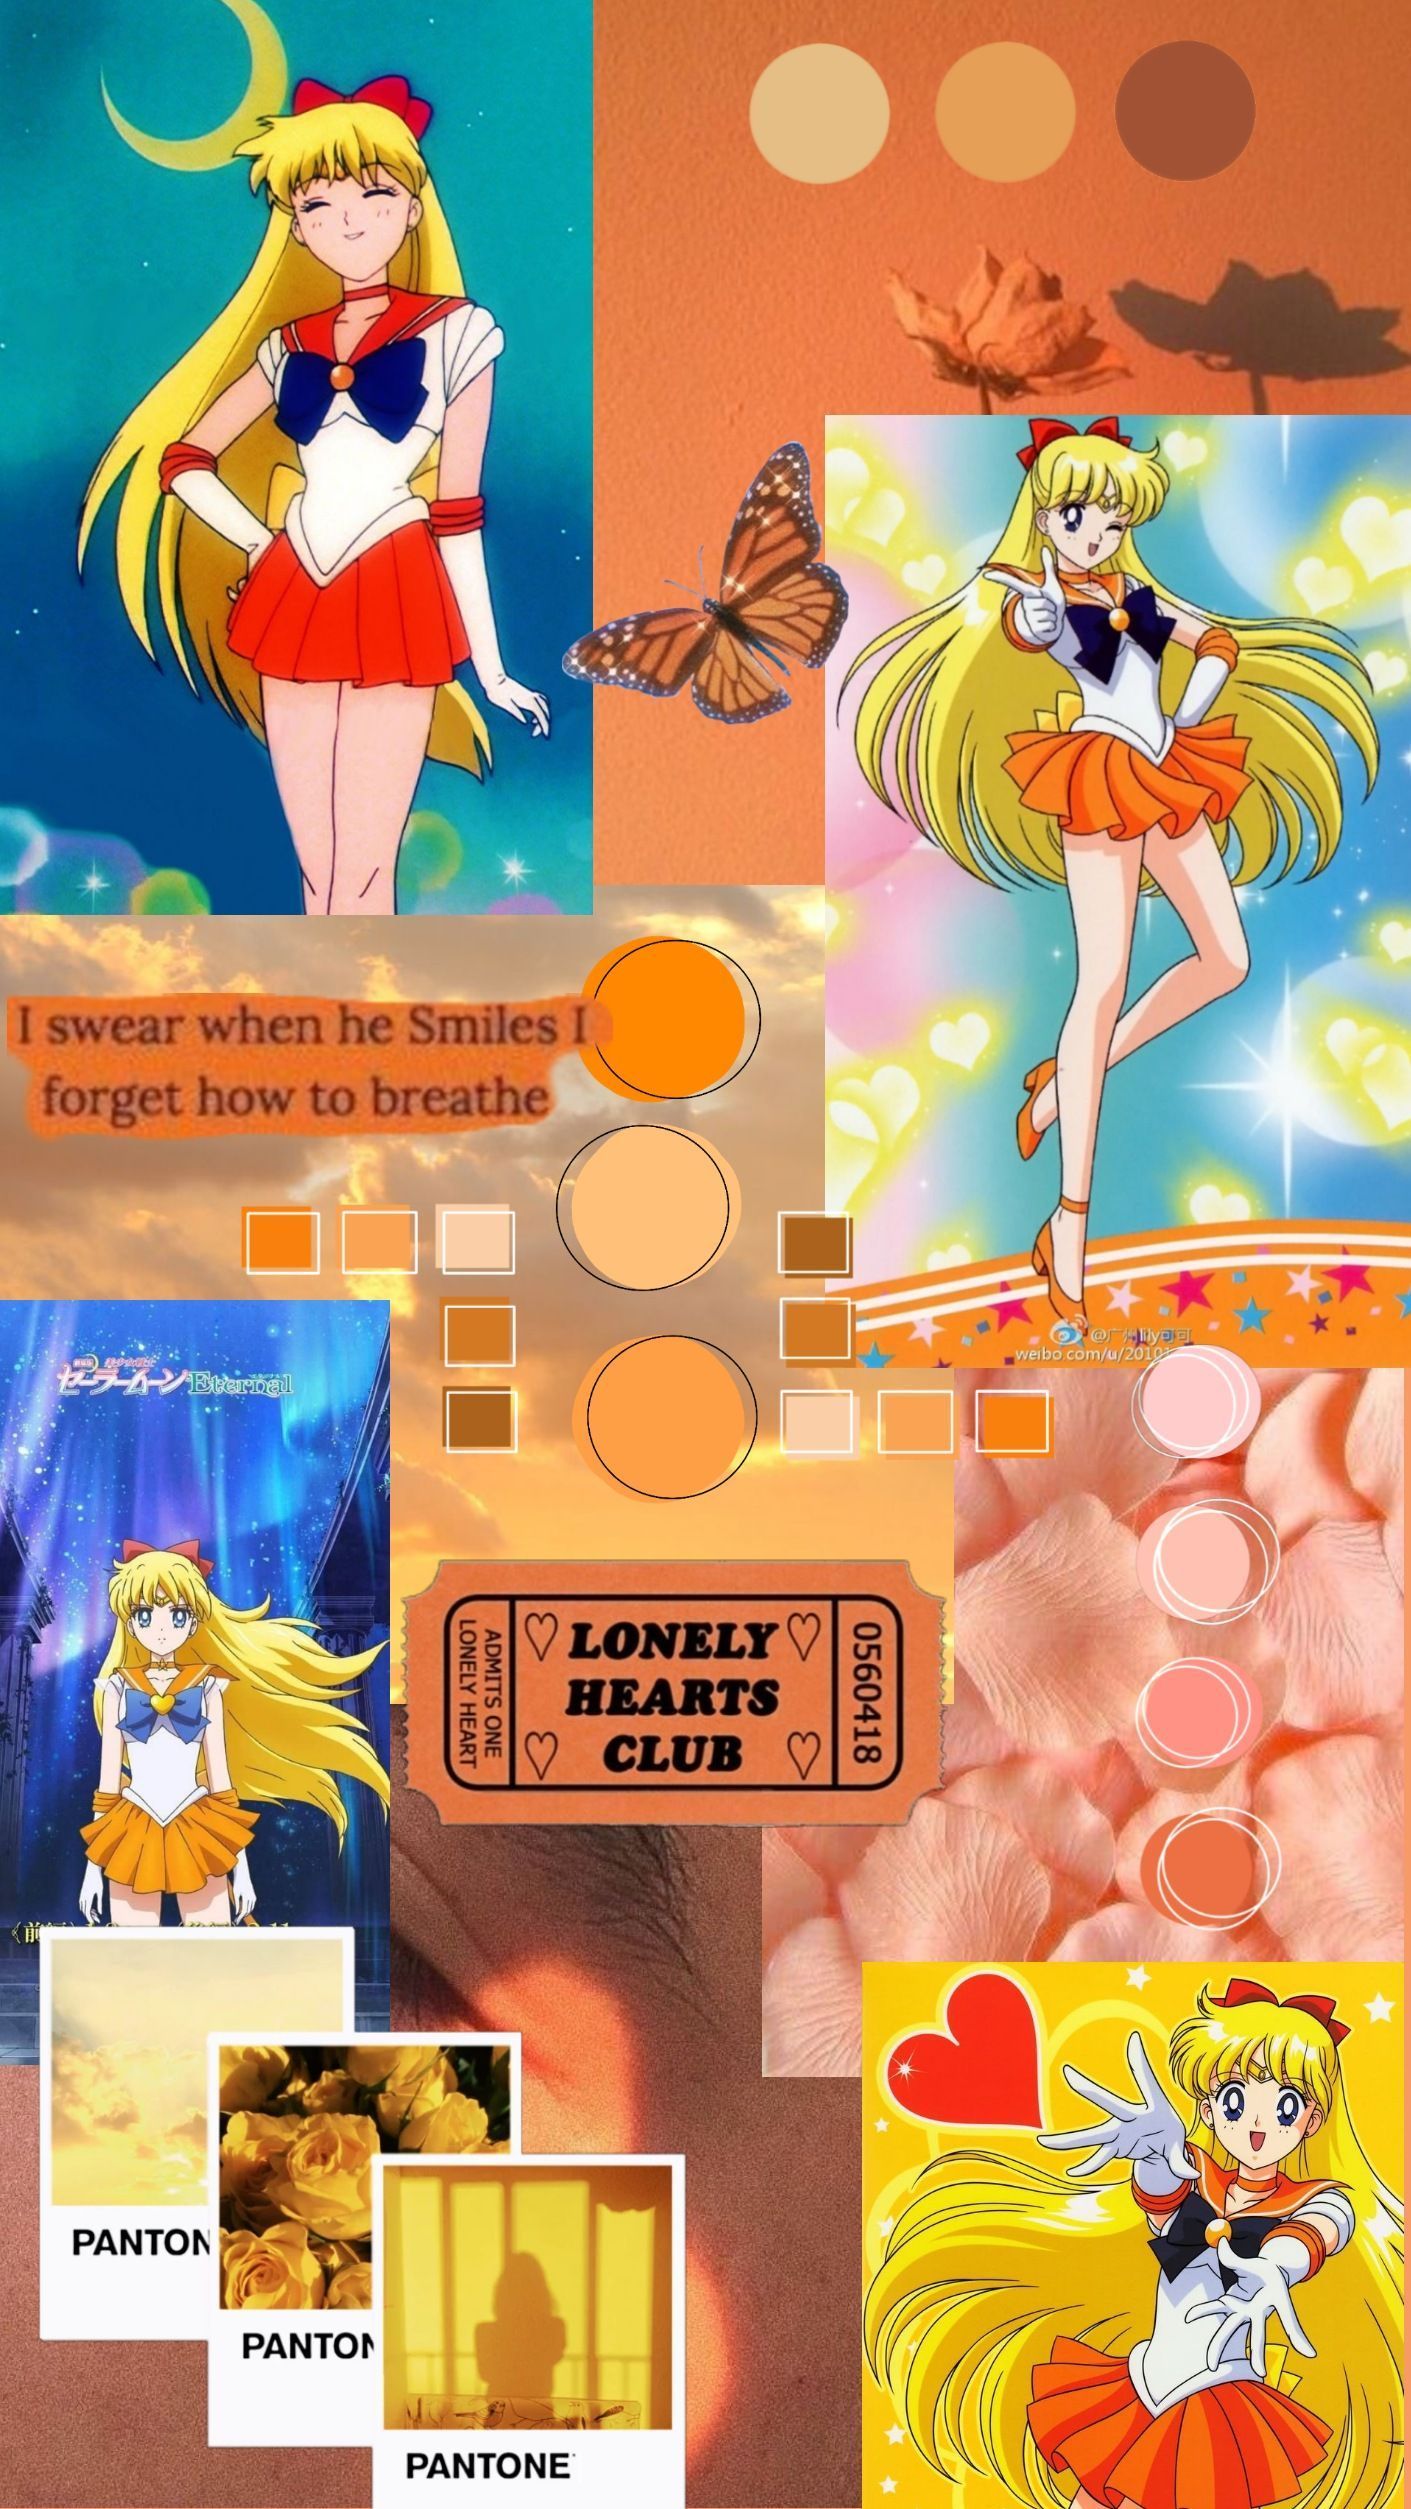 Aesthetic Sailor Moon wallpaper for phone and desktop. - Sailor Venus